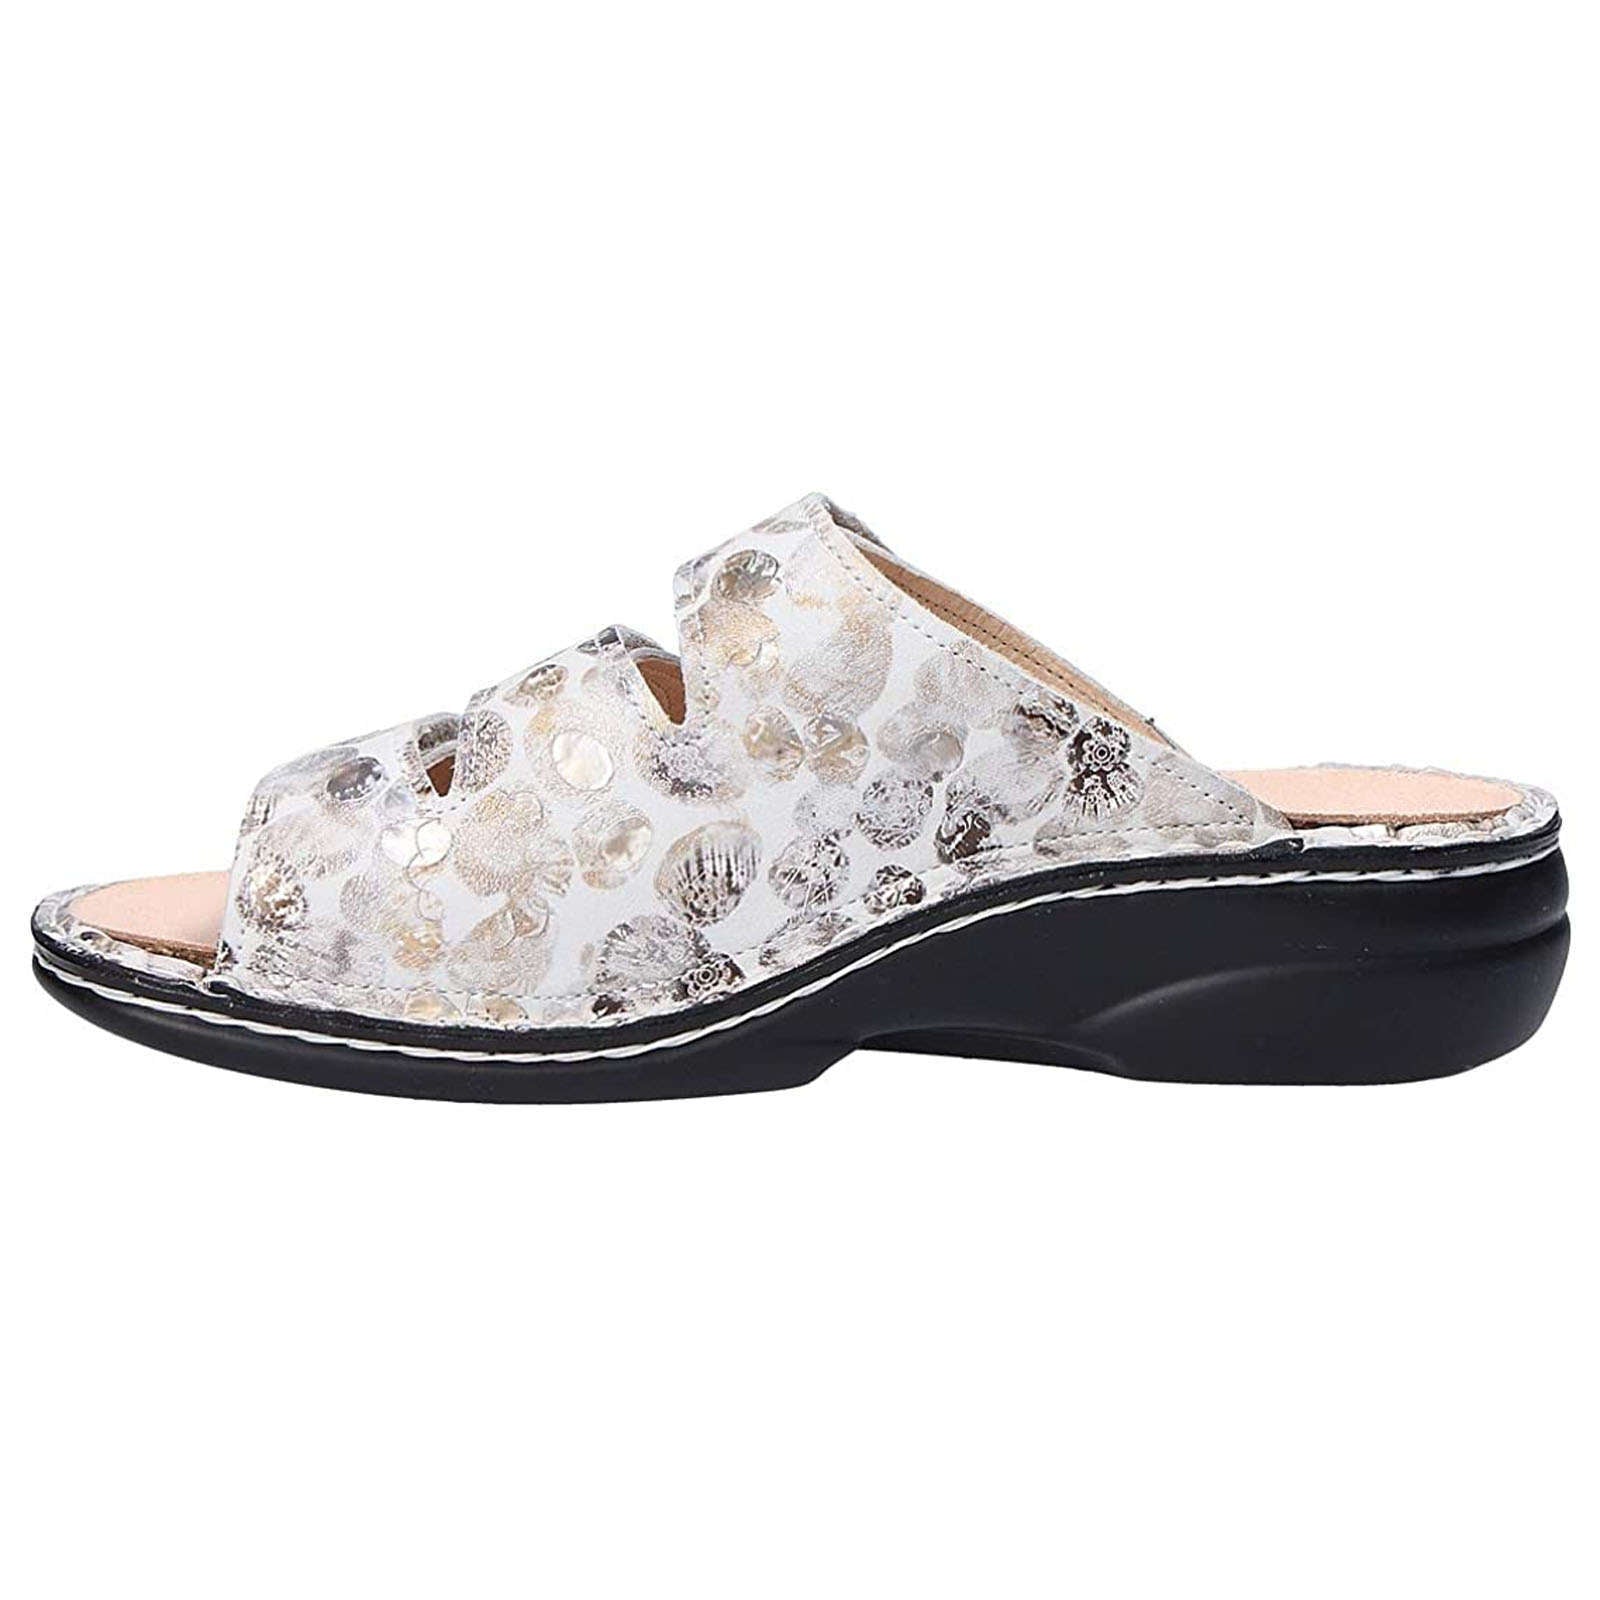 Finn Comfort Kos Leather Women's Slip-On Sandals#color_stone white